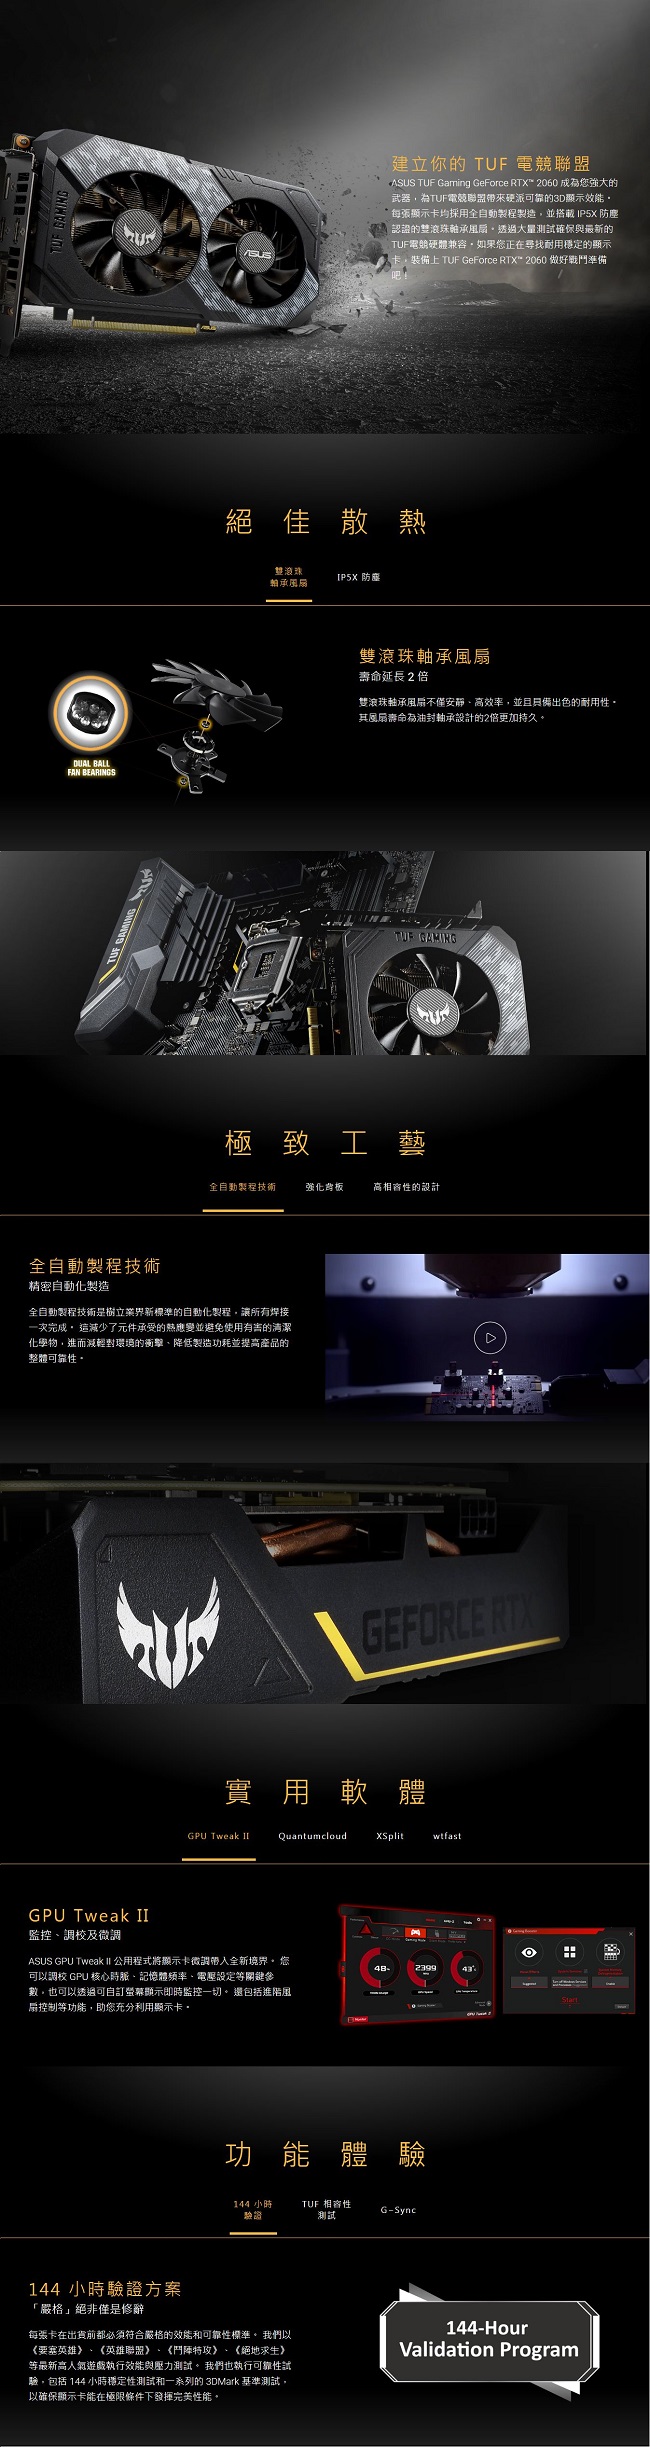 華碩 ASUS TUF GeForce RTX™ 2060 O6G GAMING 顯示卡